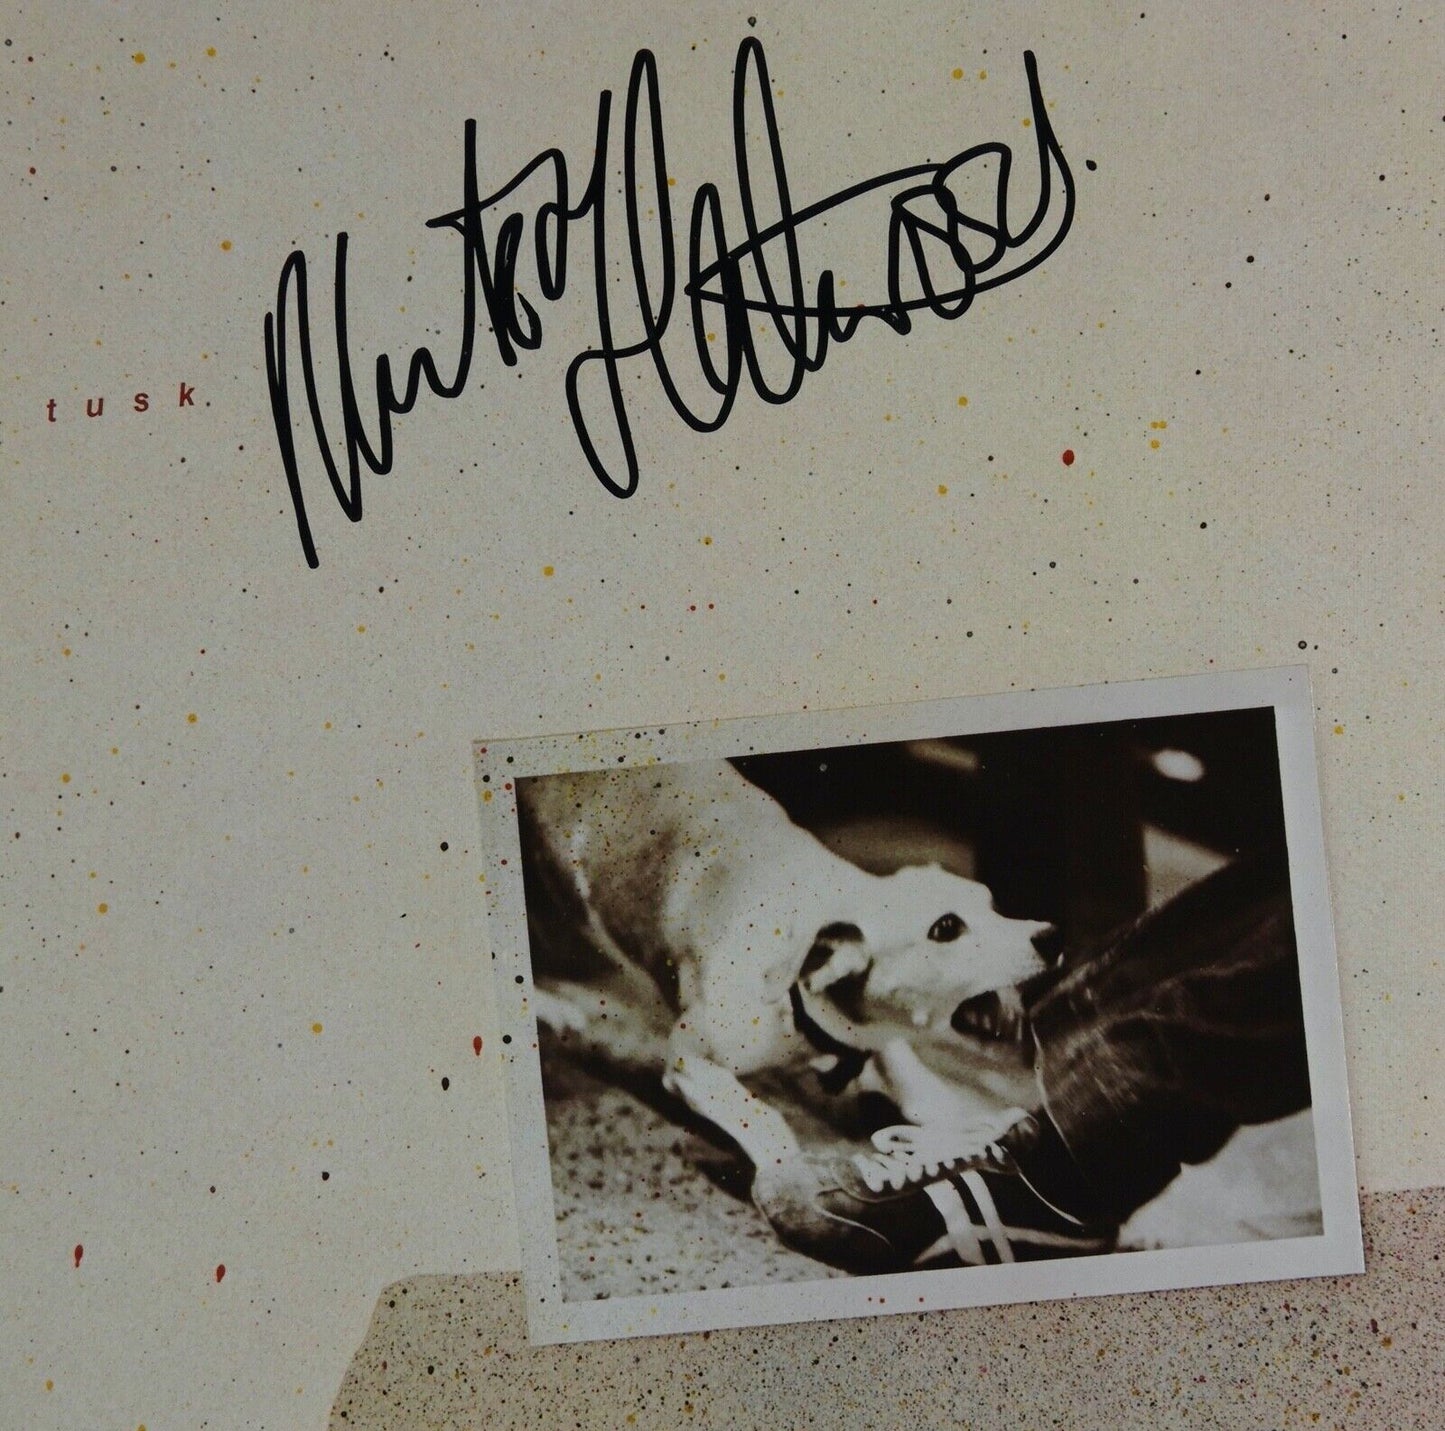 Mick Fleetwood Mac JSA Signed Autograph Album Record Vinyl Tusk